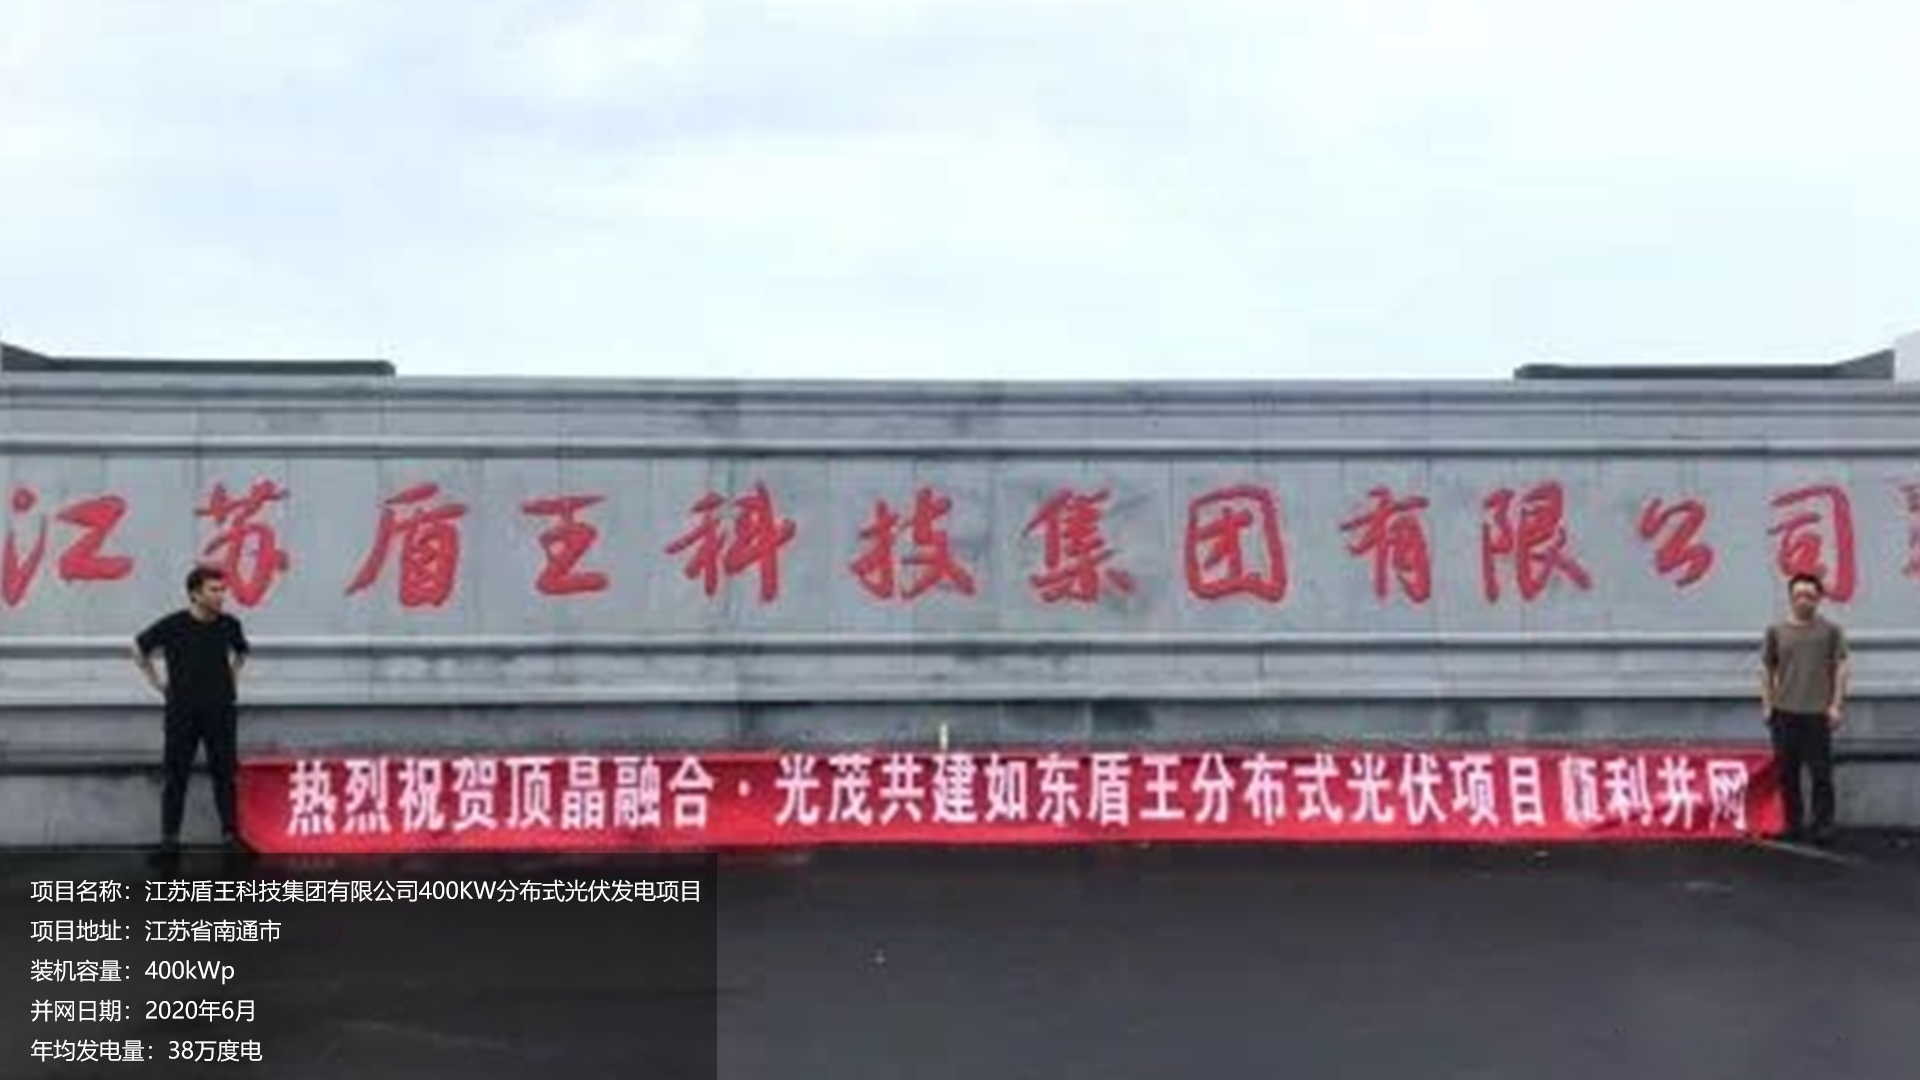 江苏盾王项目总装机容量400KW，项目位于江苏省南通市，于2020年6月并网发电，年均发电量约38万度。